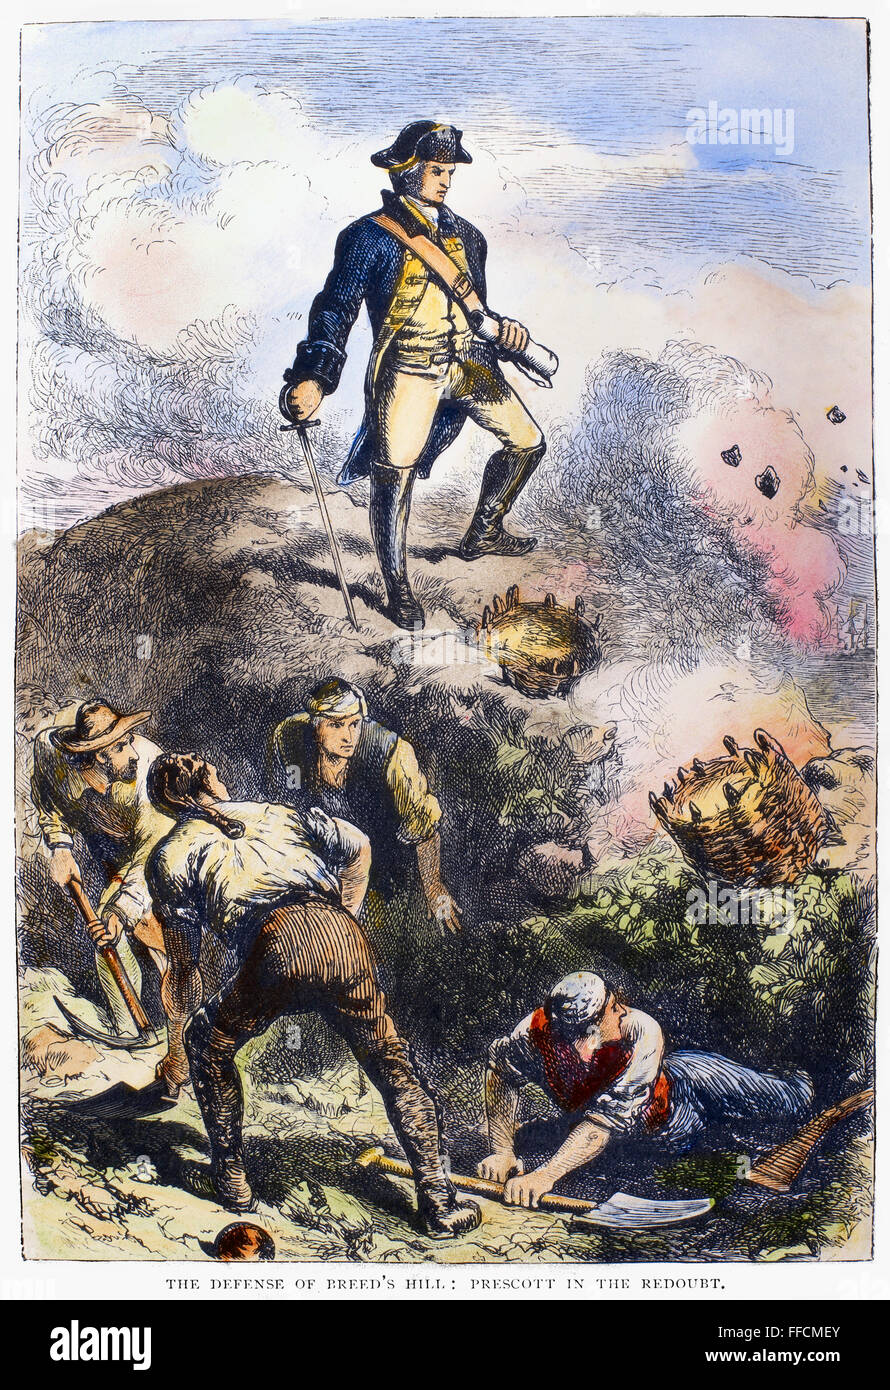 Bataille de Bunker Hill, 1775. /NColonel William Prescott à la redoute sur Breed's Hill au cours de la Bataille de Bunker Hill, 17 juin 1775. La gravure de ligne, 19e siècle. Banque D'Images